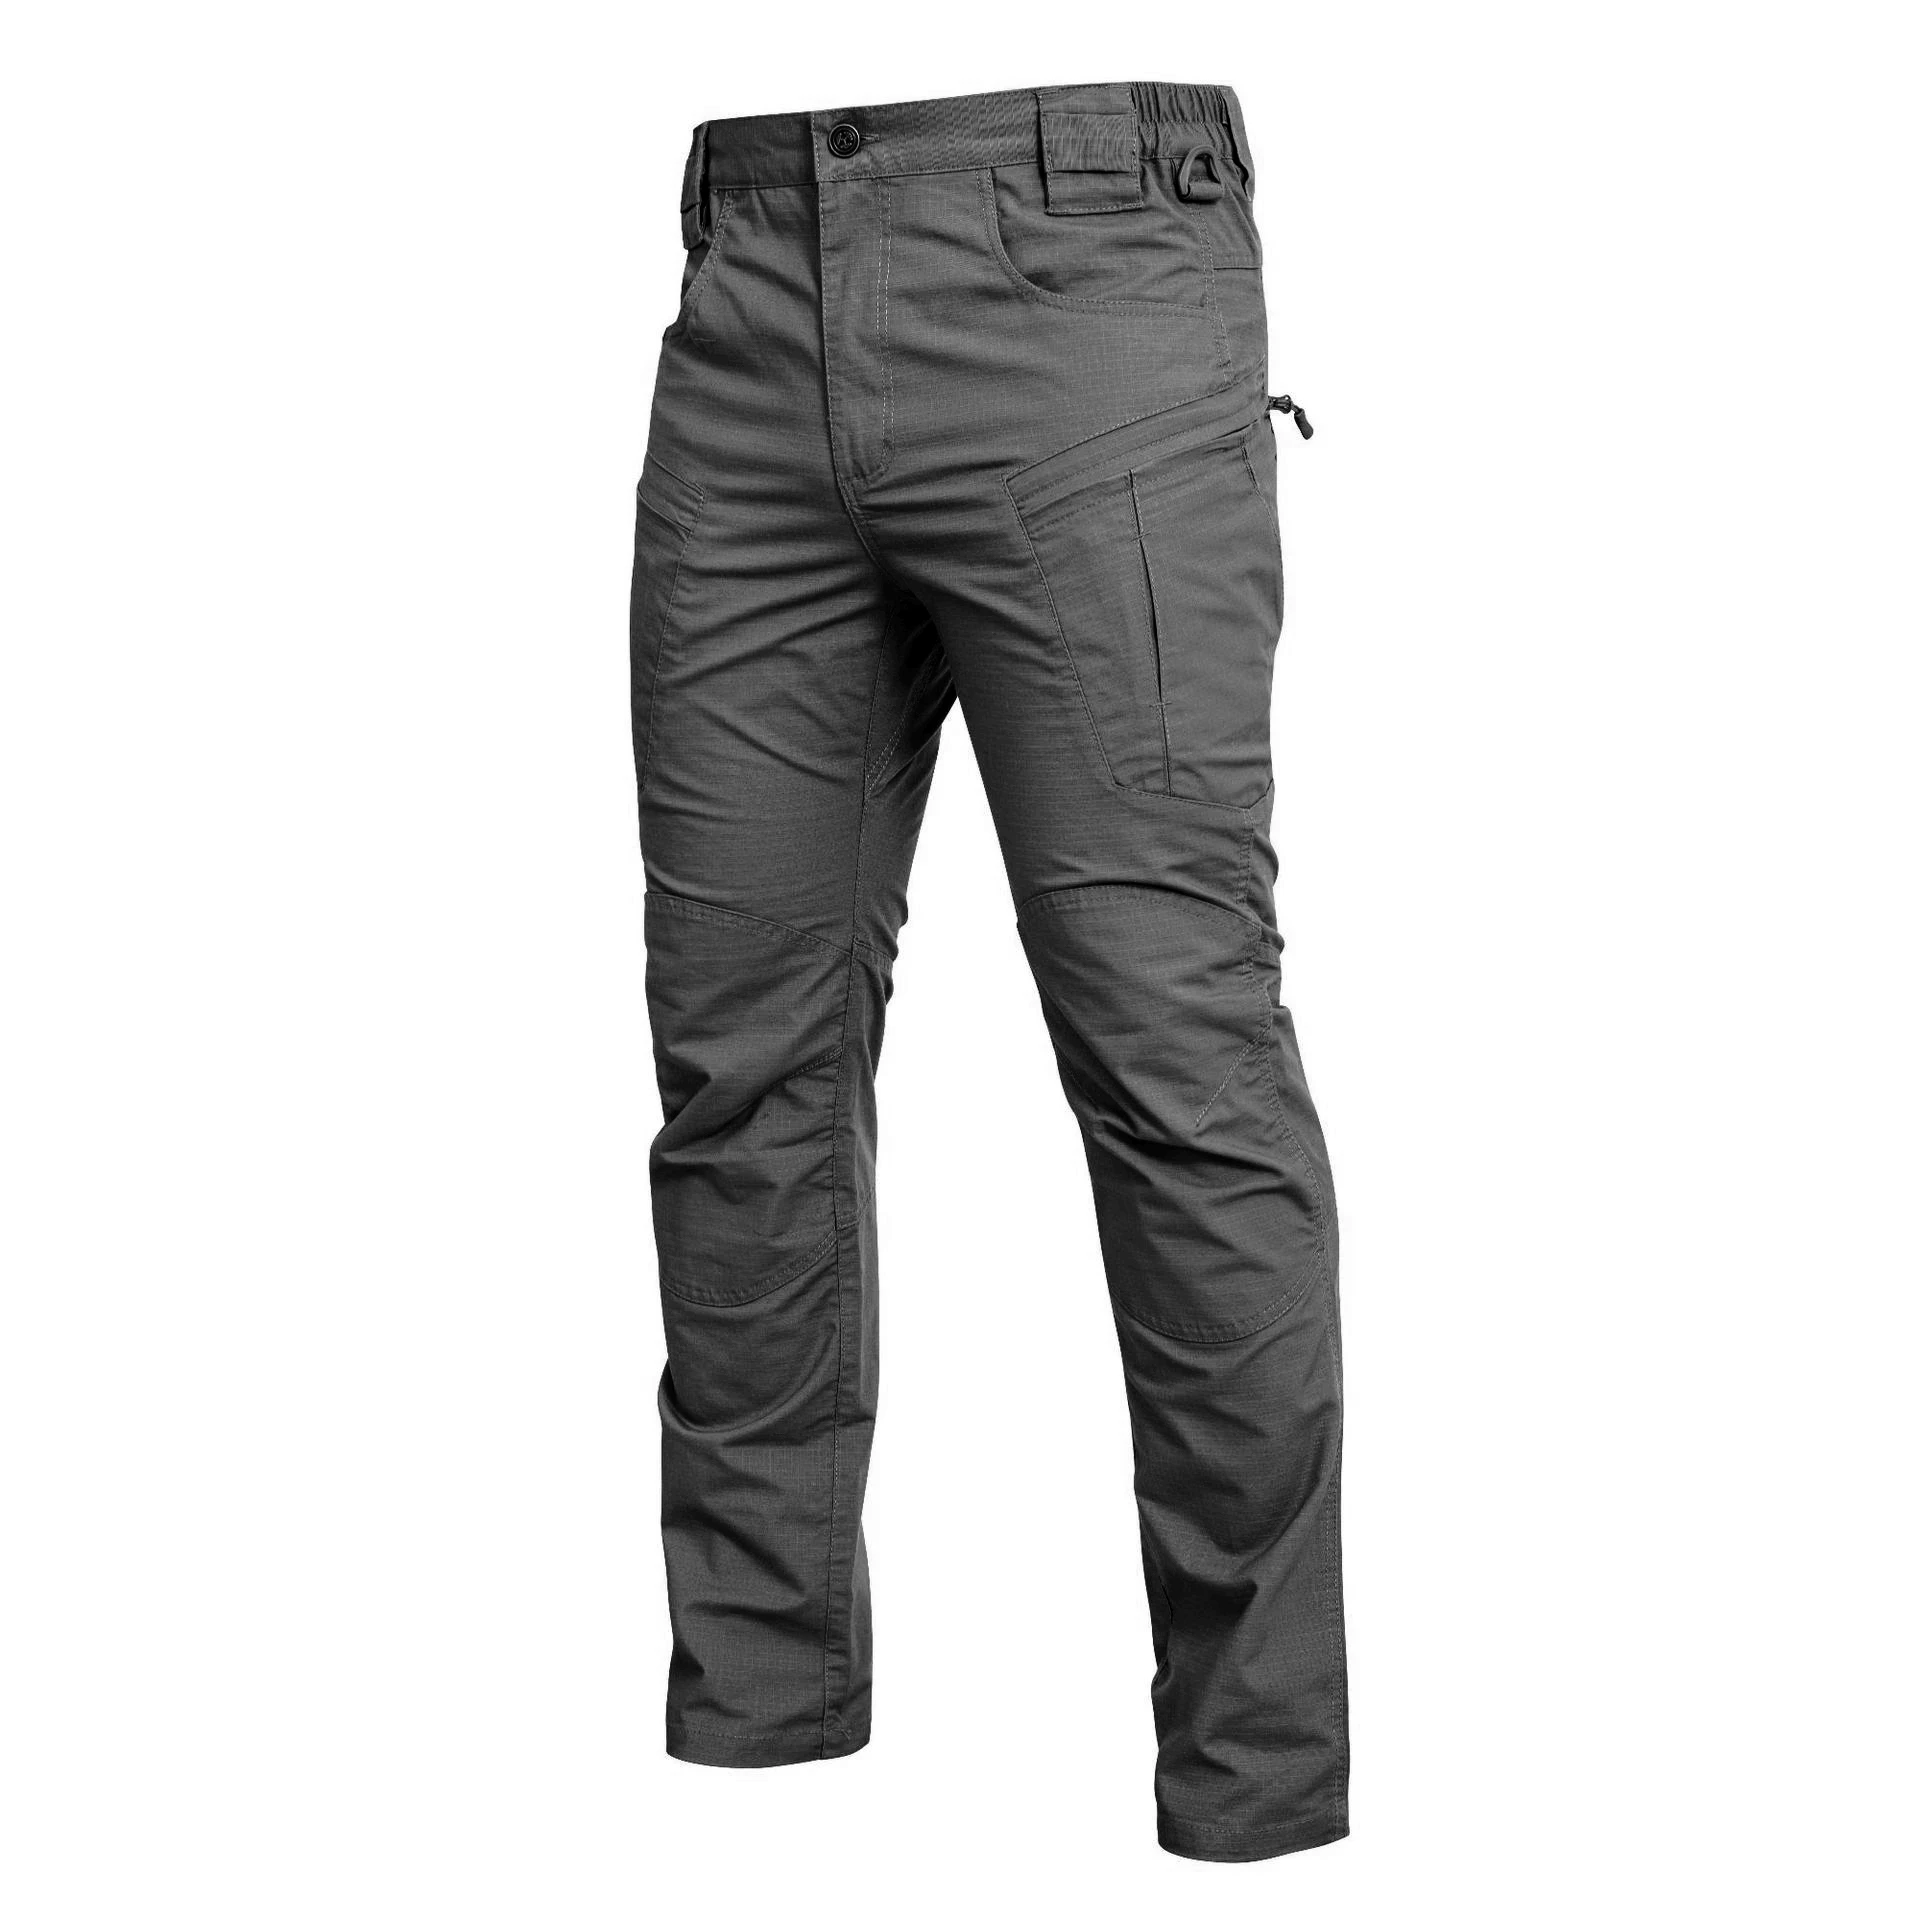 

Брюки-карго мужские X5, армейские тактические штаны в стиле милитари, уличная одежда, брюки для треккинга, походов, горного туризма, работы